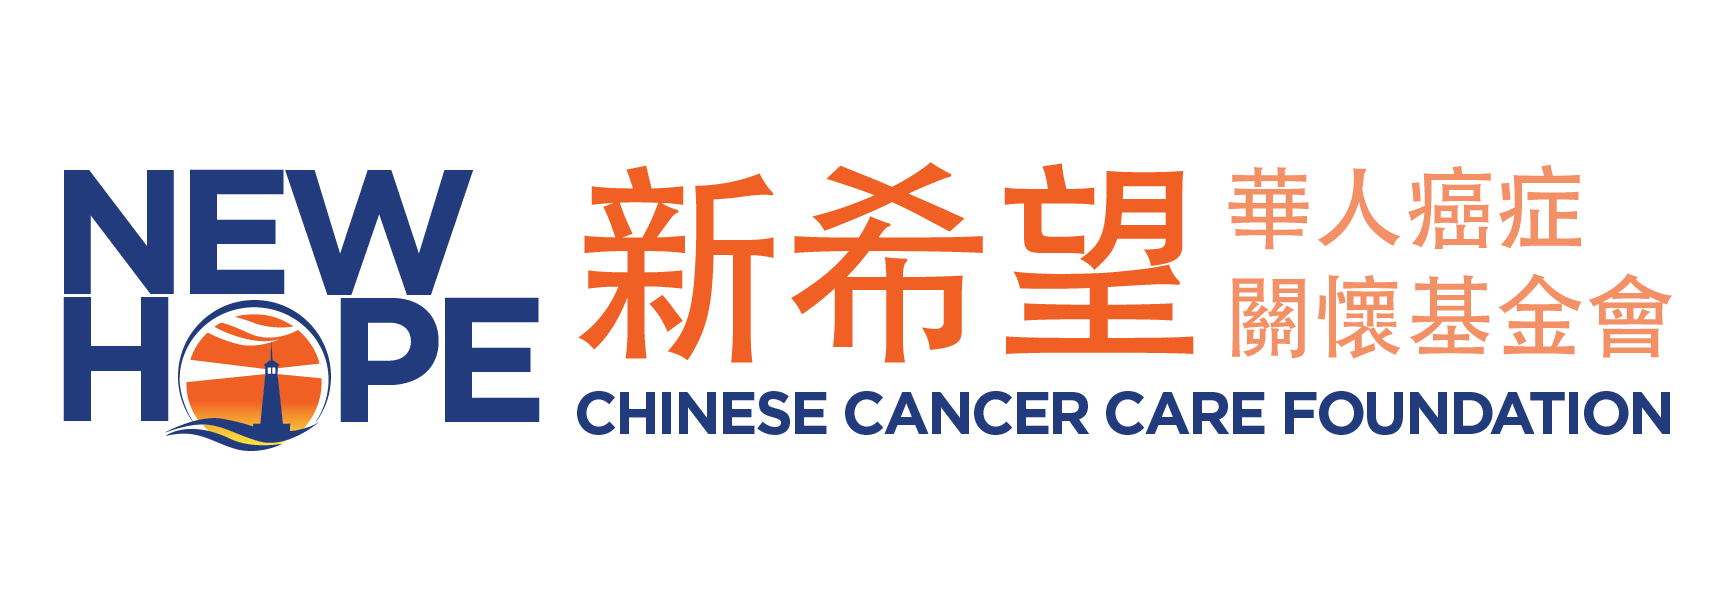 新希望華人癌症關懷基金會